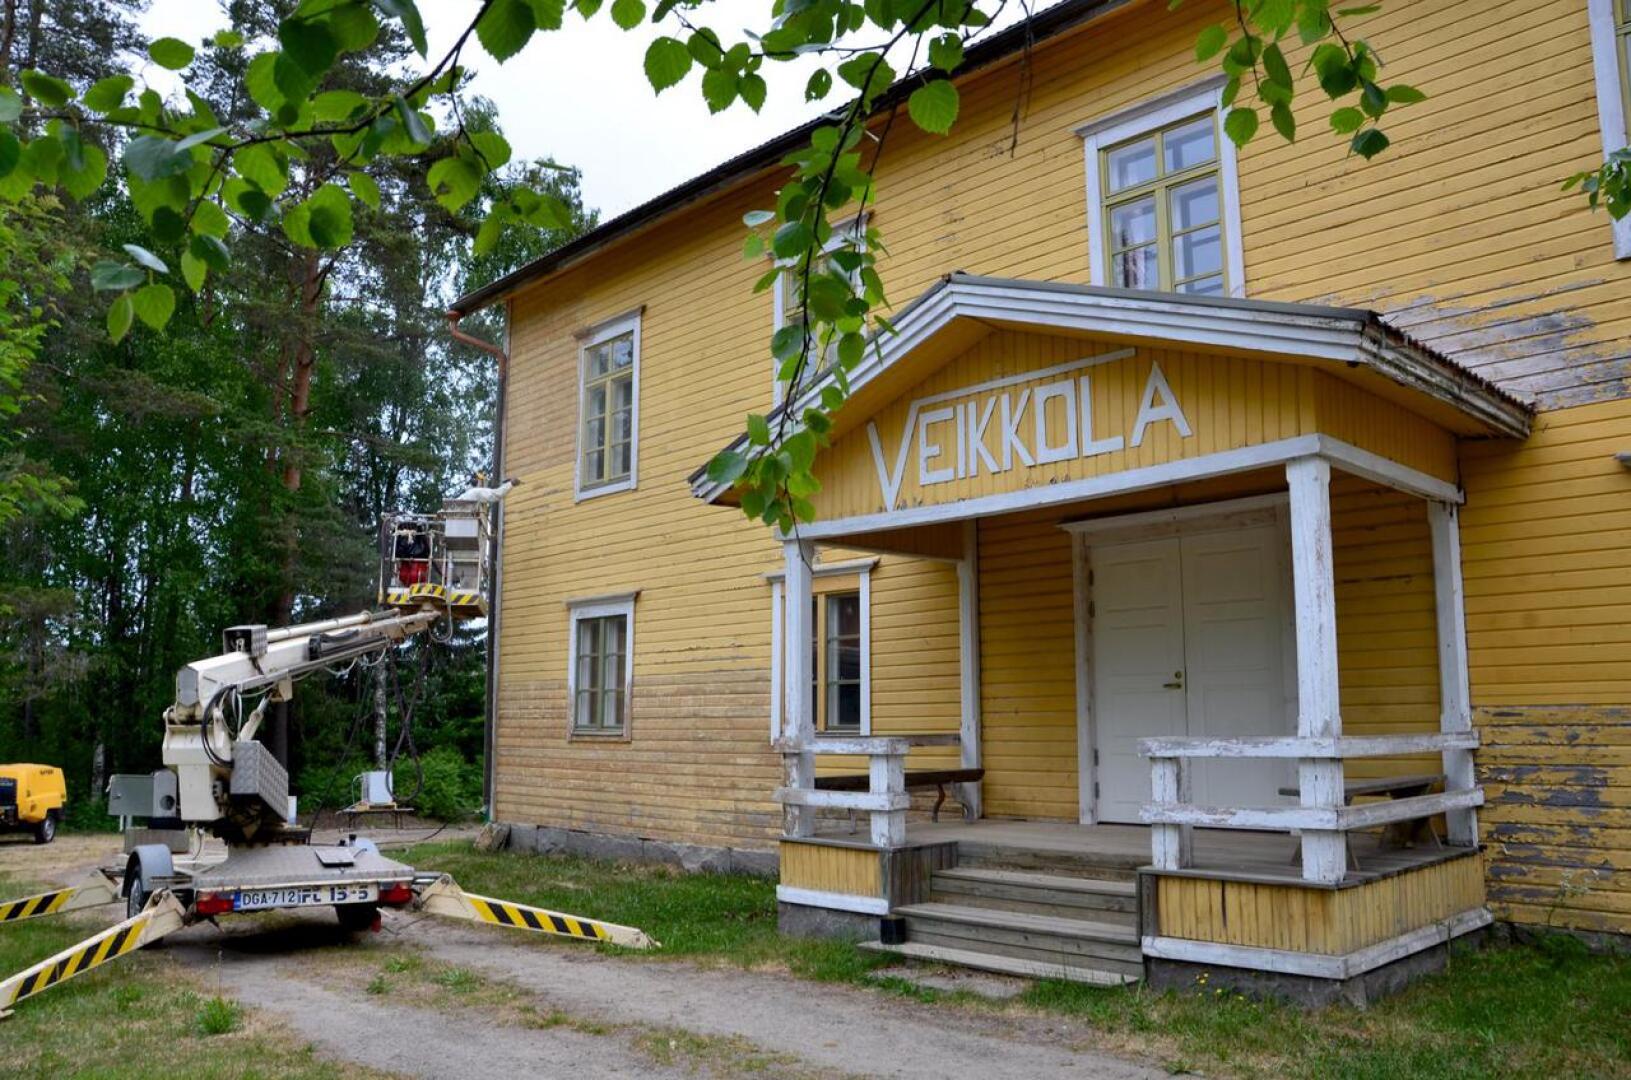 Vetelin Kirkonkylän nuorisoseuran pyörittämä Veikkola sai uuden maalipinnan kesällä 2018. Seuraavaksi talossa aiotaan korjata muun muassa kattoa. 